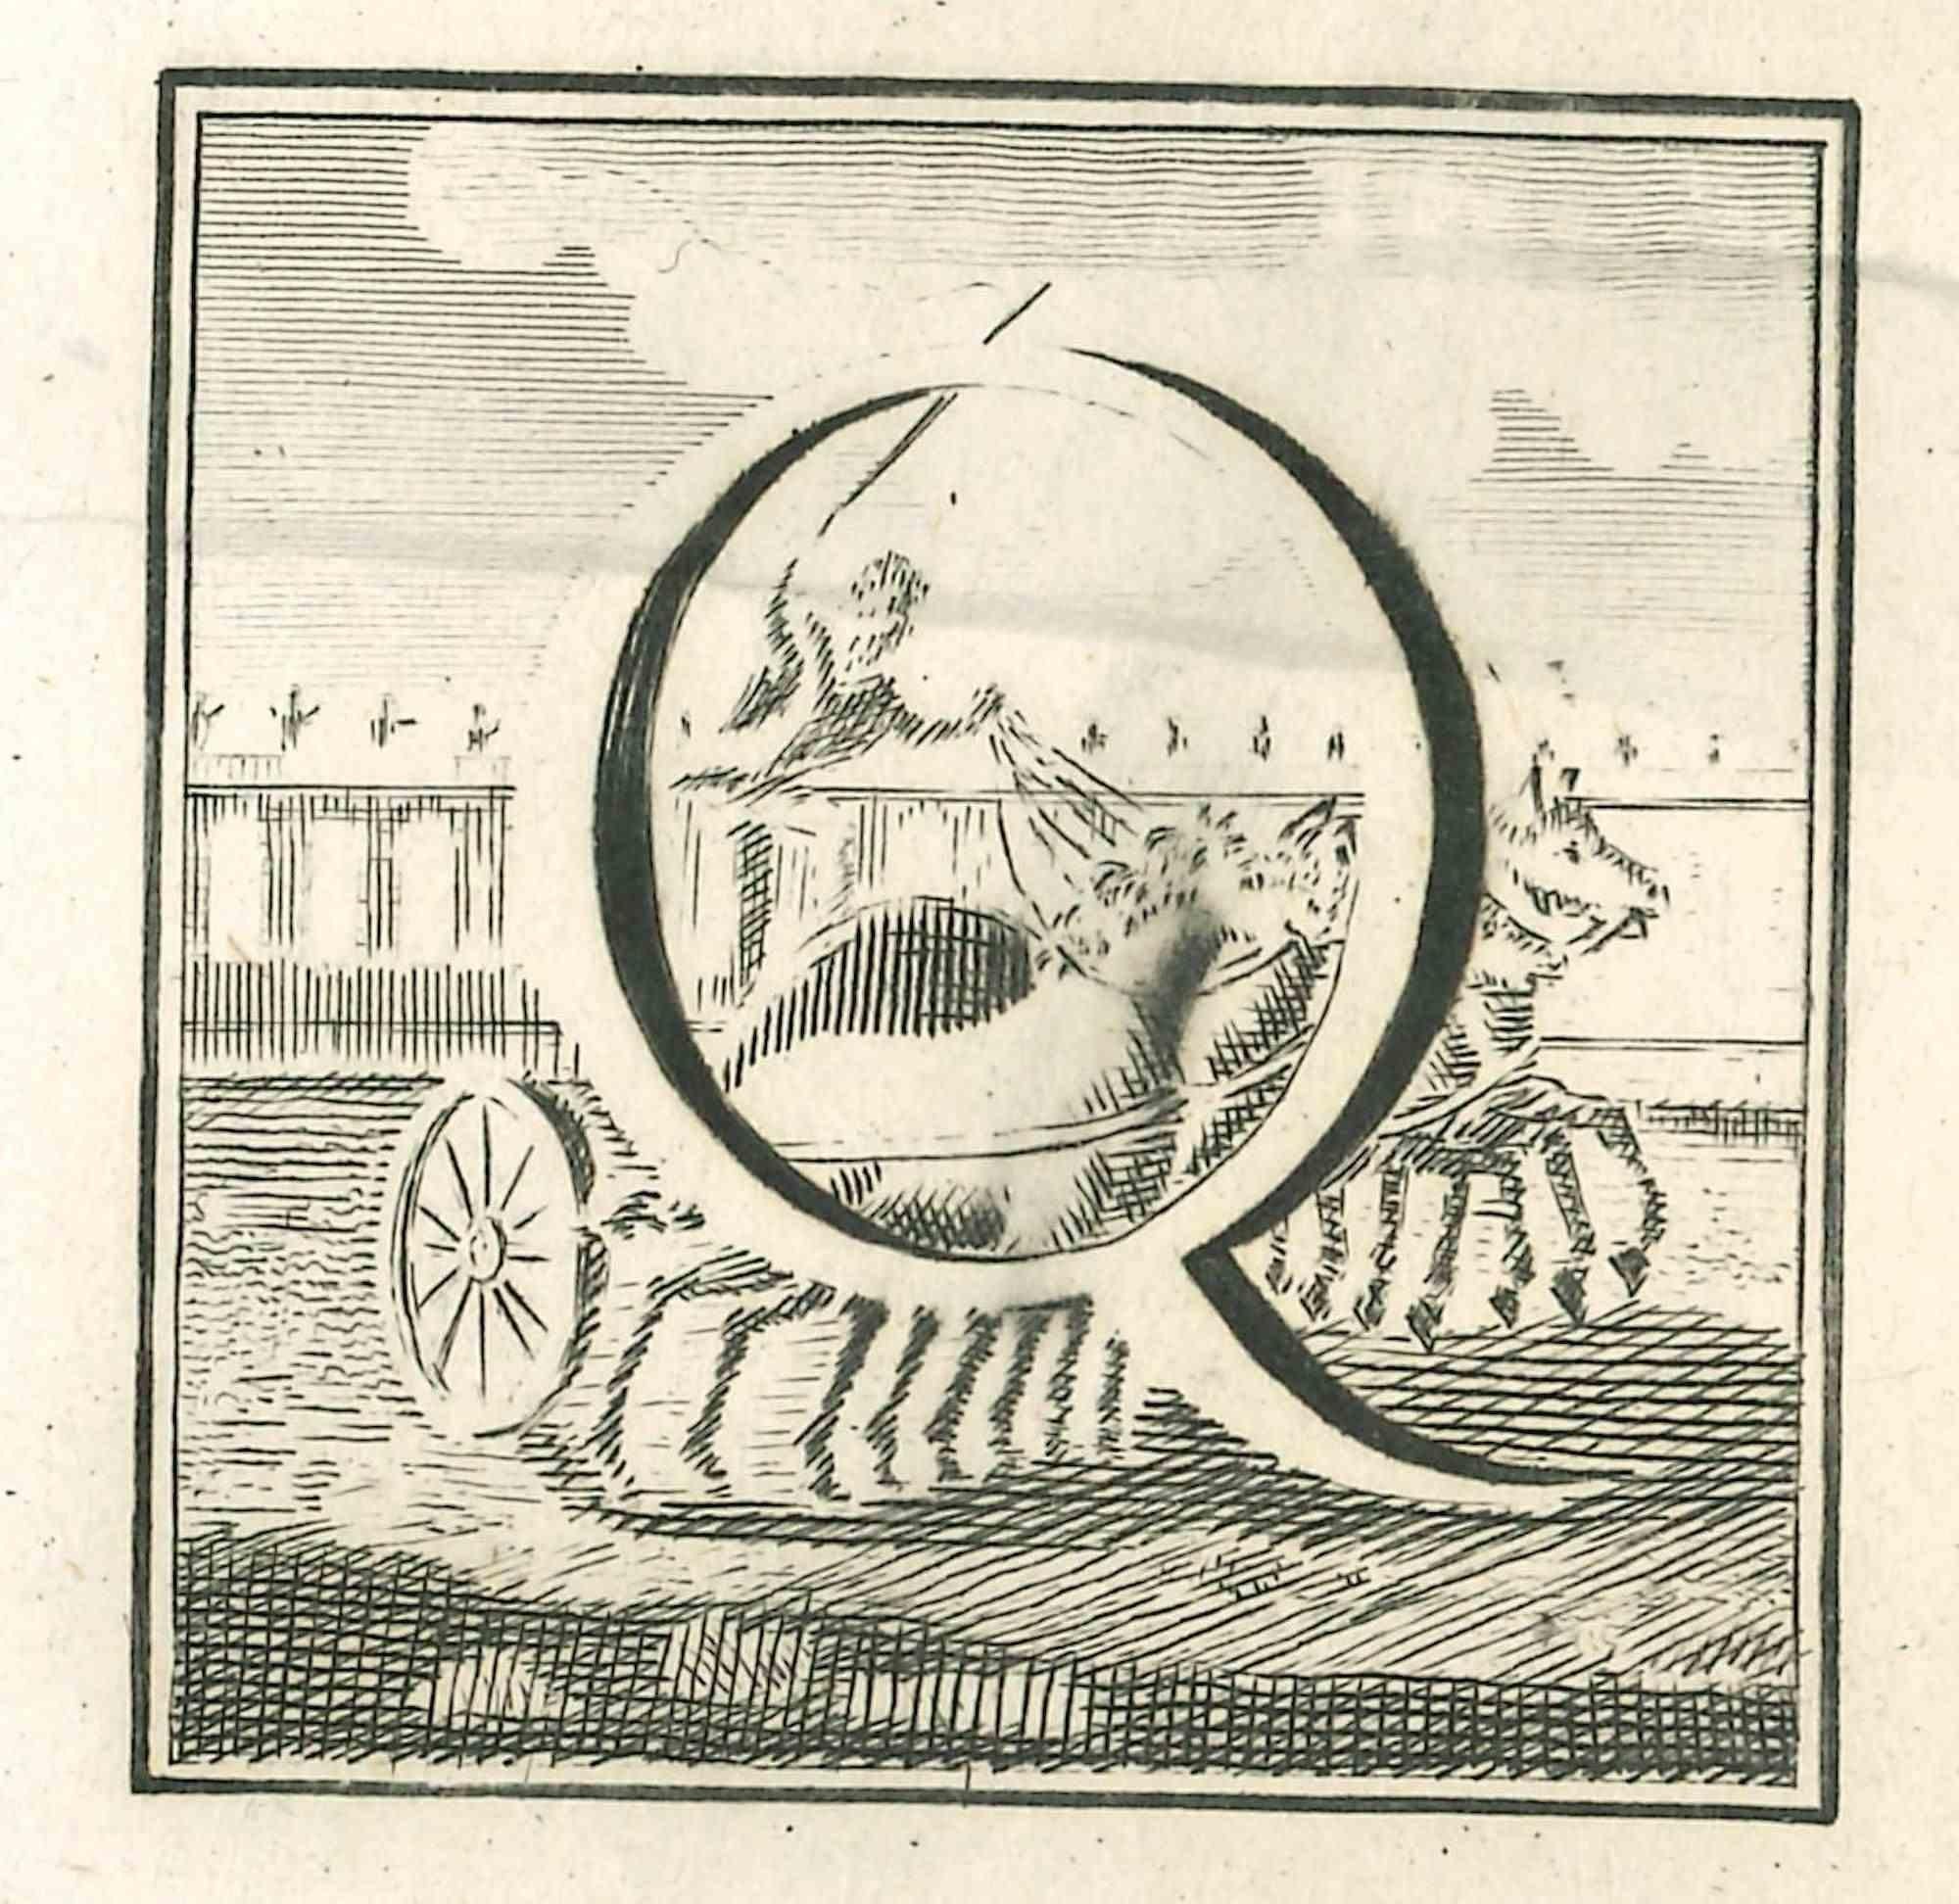 Lettre de l'alphabet Q,  de la série "Antiquités d'Herculanum", est une gravure sur papier réalisée par Luigi Vanvitelli au 18ème siècle.

Bon état avec quelques pliures.

La gravure appartient à la suite d'estampes "Antiquités d'Herculanum